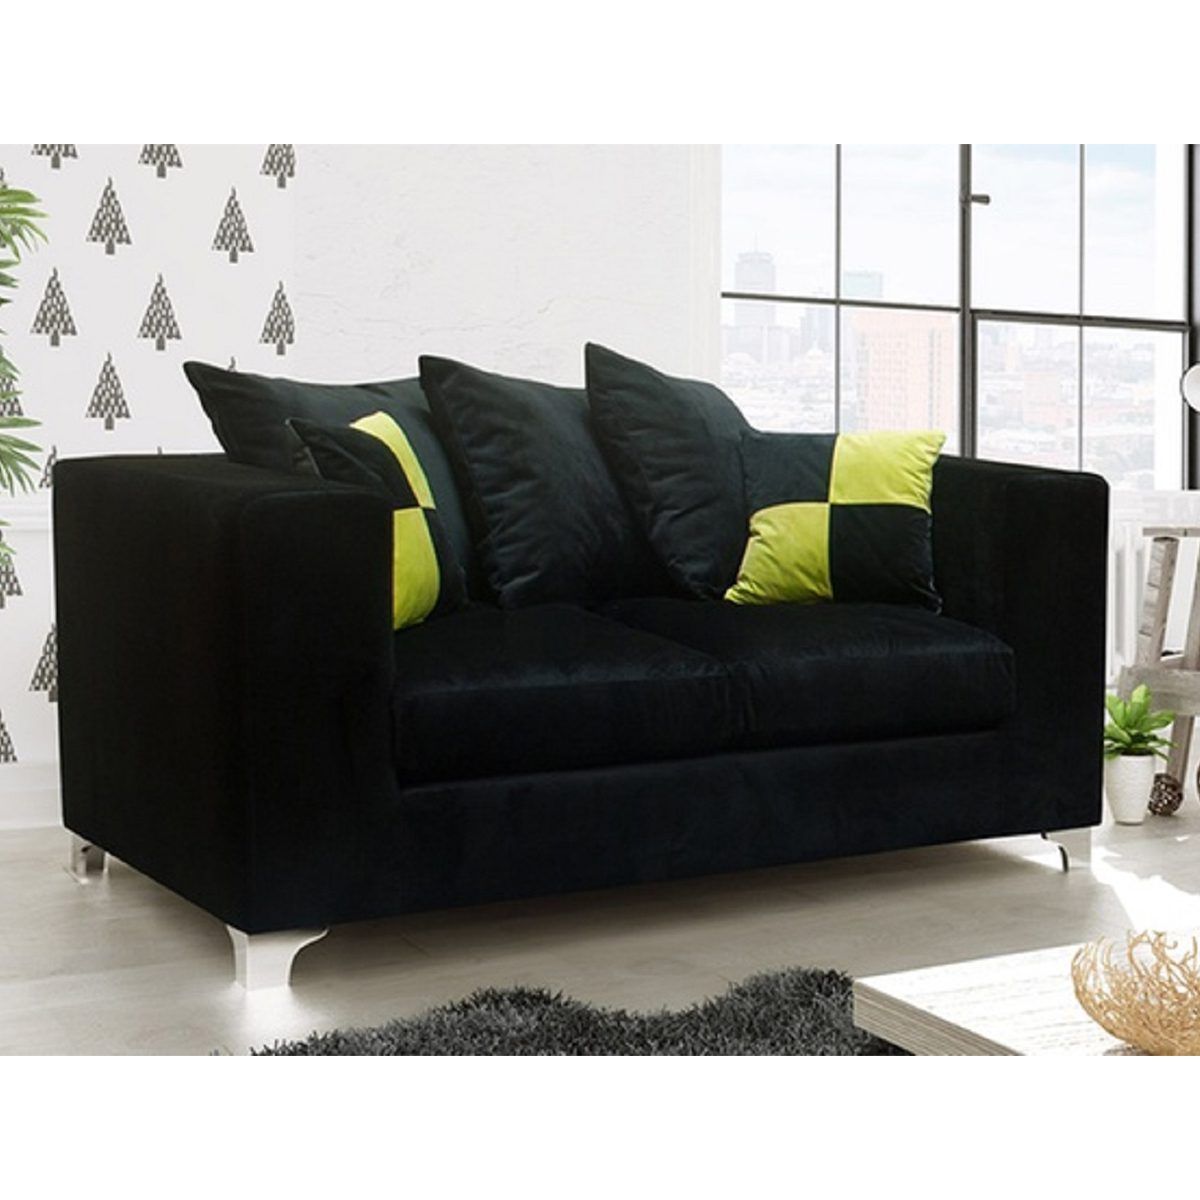 Quinn Plush Velvet Fabric 2 Seater Sofa – Black | Furnishings For Less Uk With Regard To Black Velvet 2 Seater Sofa Beds (View 4 of 15)